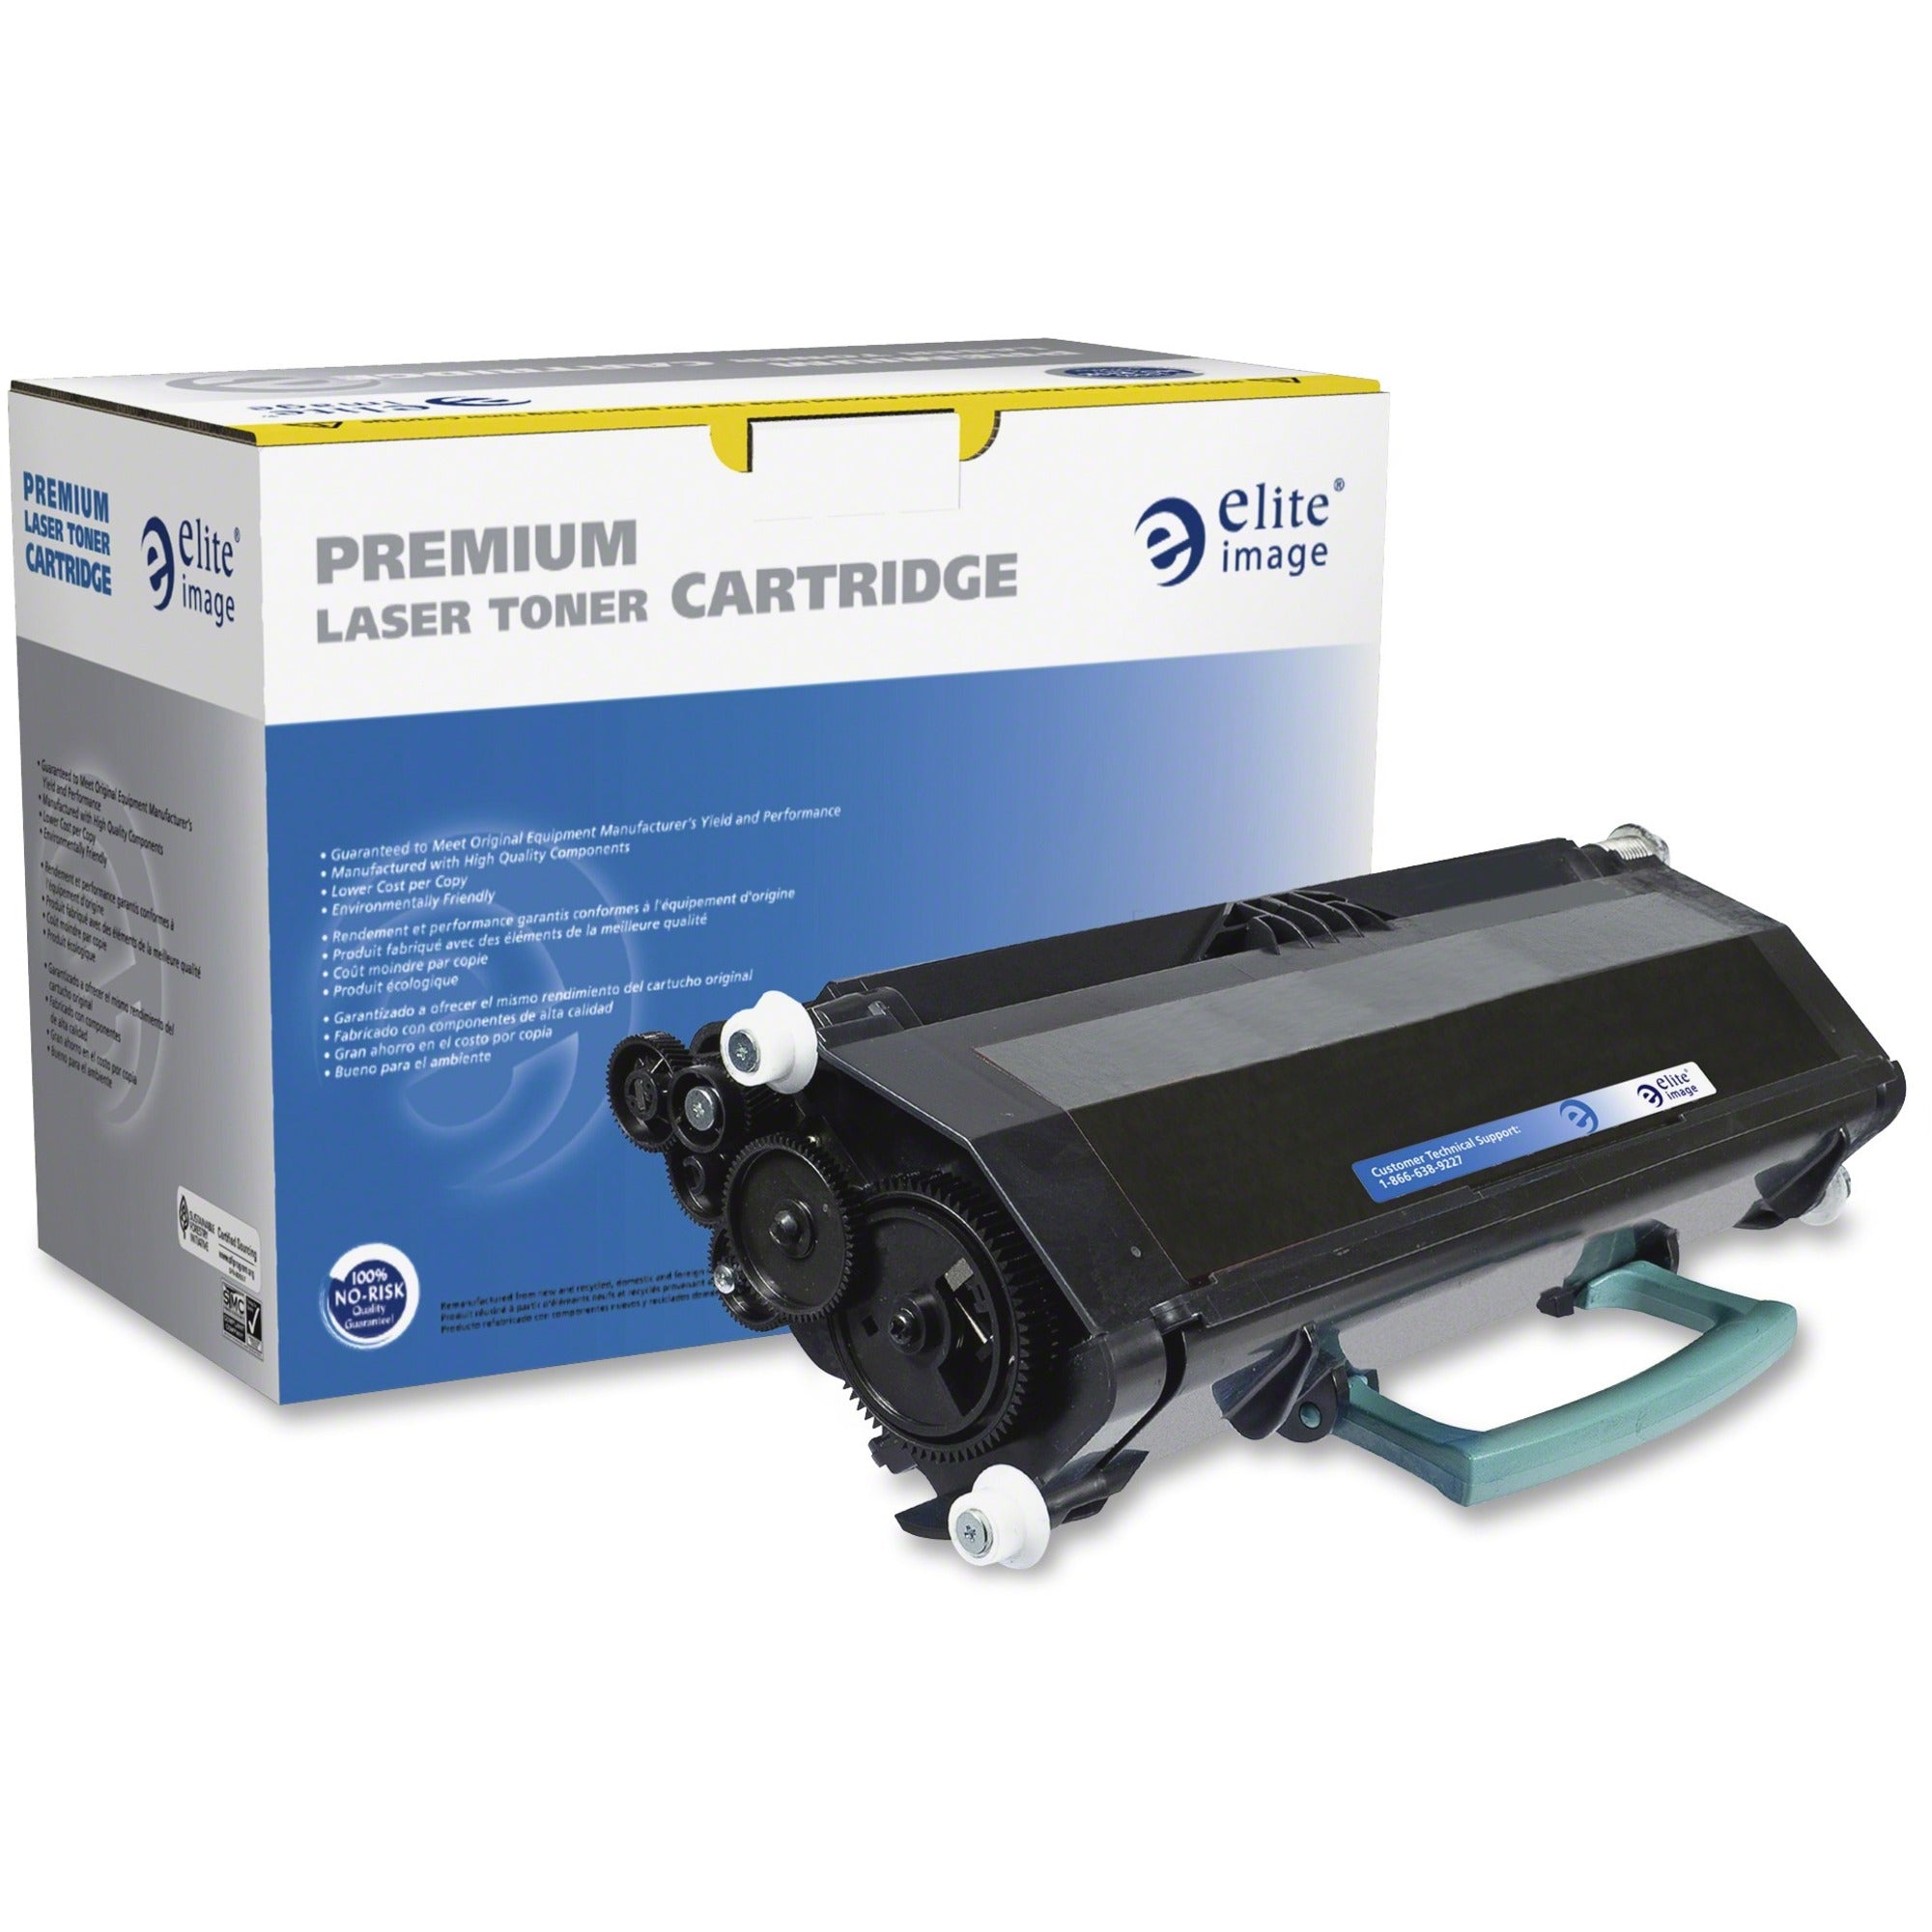 Elite Image Remanufactured Toner Cartridge - Alternative for Dell (330-4130) - Laser - 3500 Pages - Black - 1 Each - 1